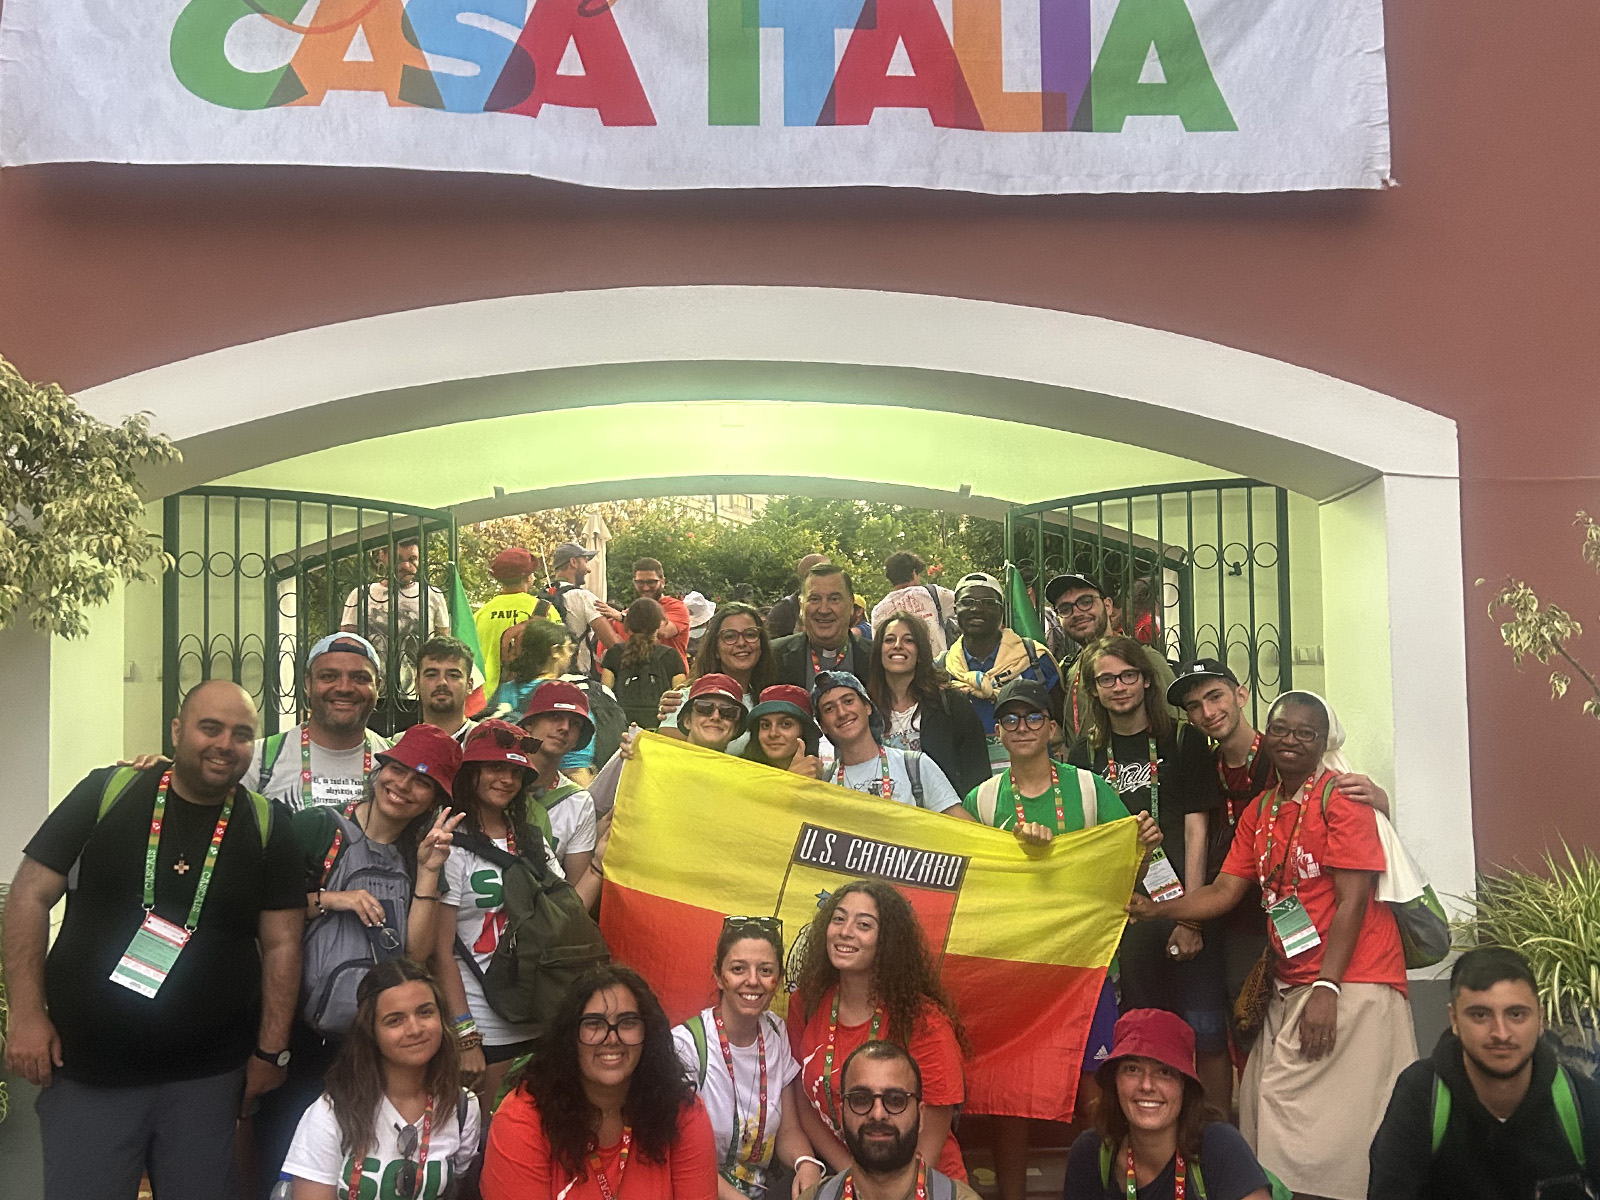 Foto a Casa Italia dei giovani dell'Arcidiocesi Metropolitana di Catanzaro-Squillace